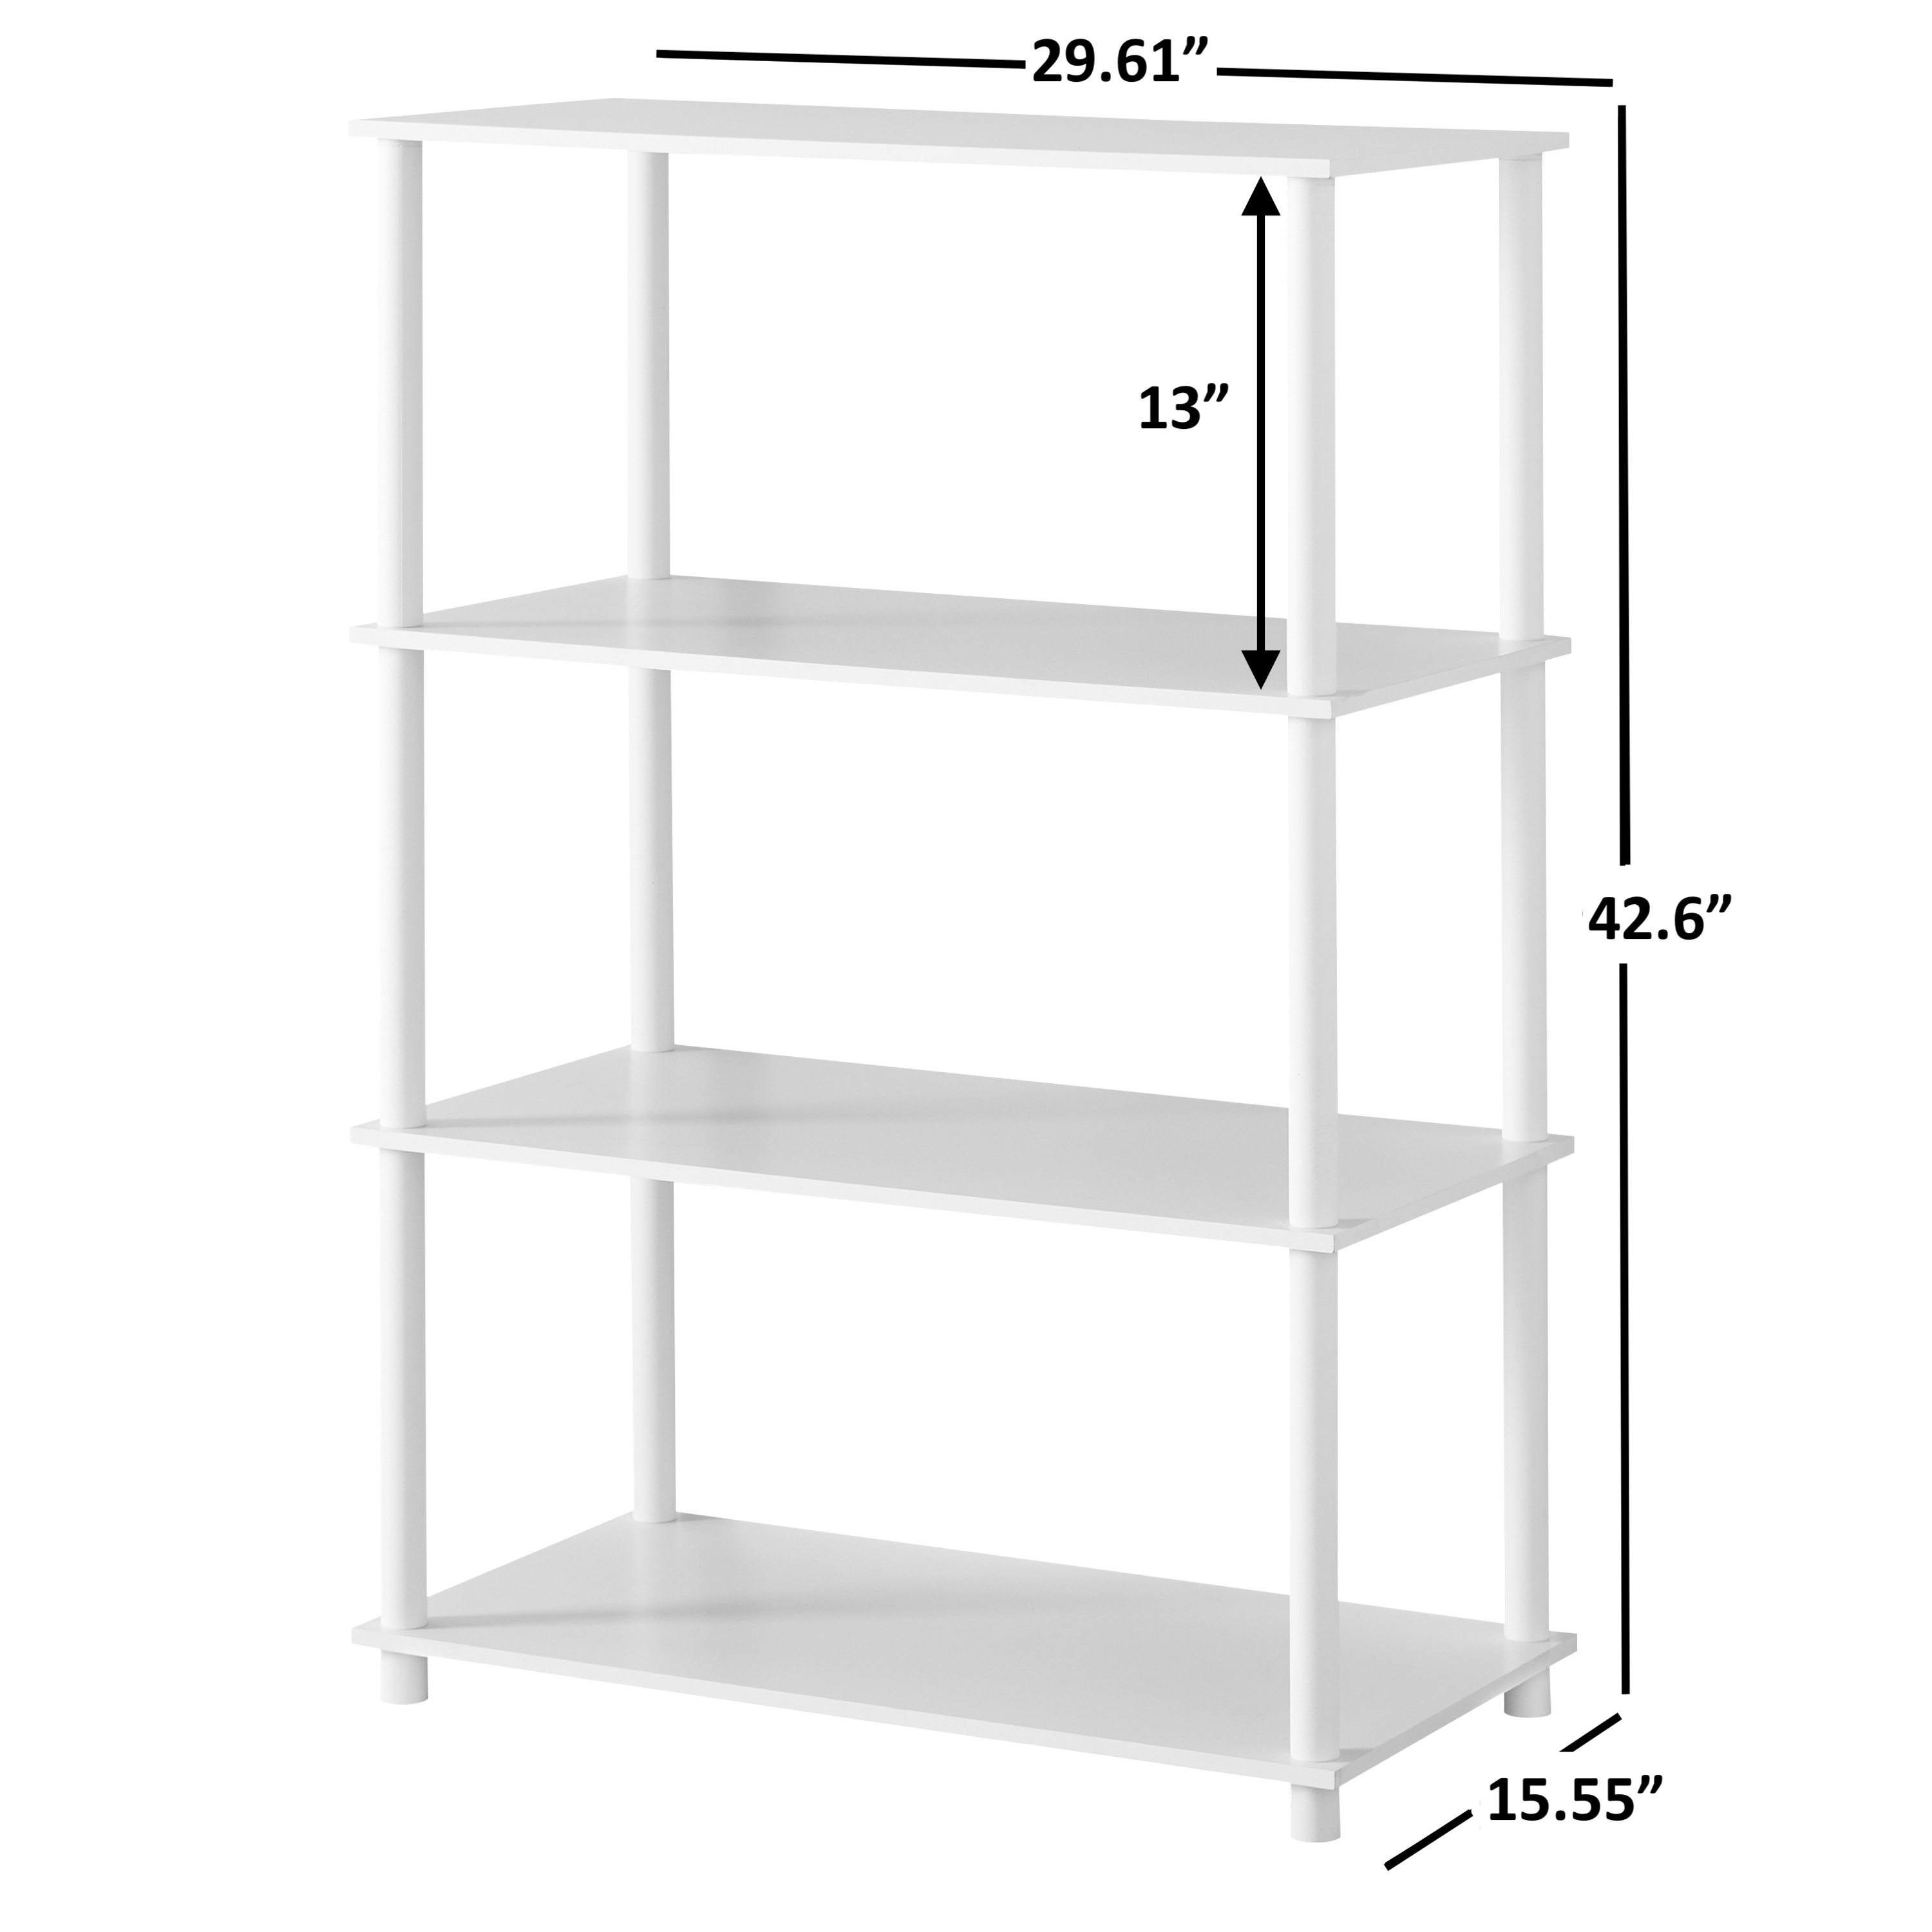 Mainstays No Tools 4-Shelf Storage Bookcase, White - image 5 of 5